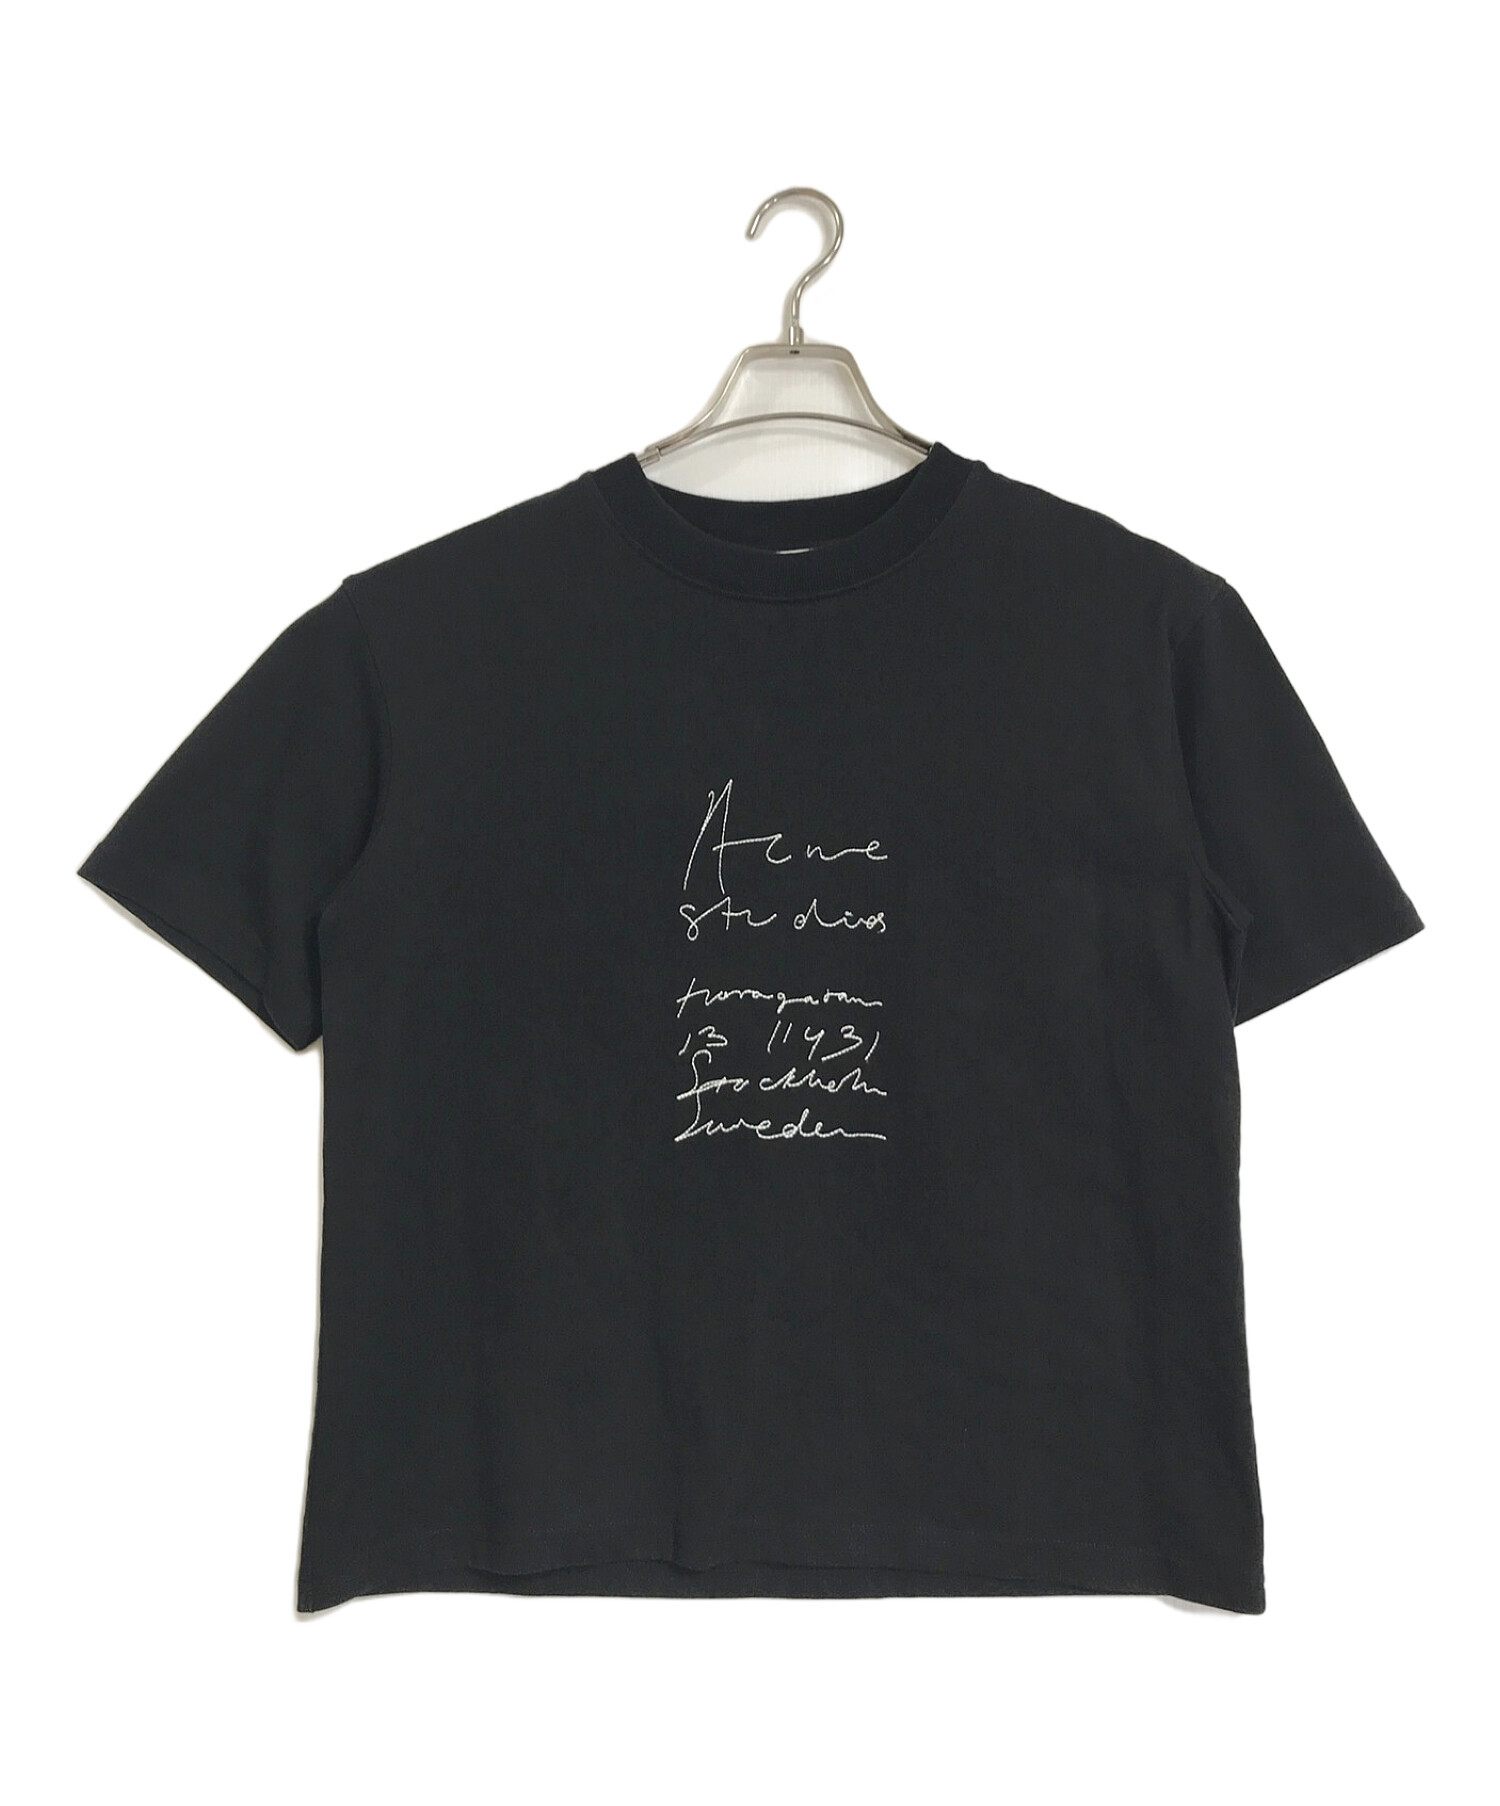 中古・古着通販】ACNE STUDIOS (アクネ ストゥディオス) Tシャツ 刺繍T 